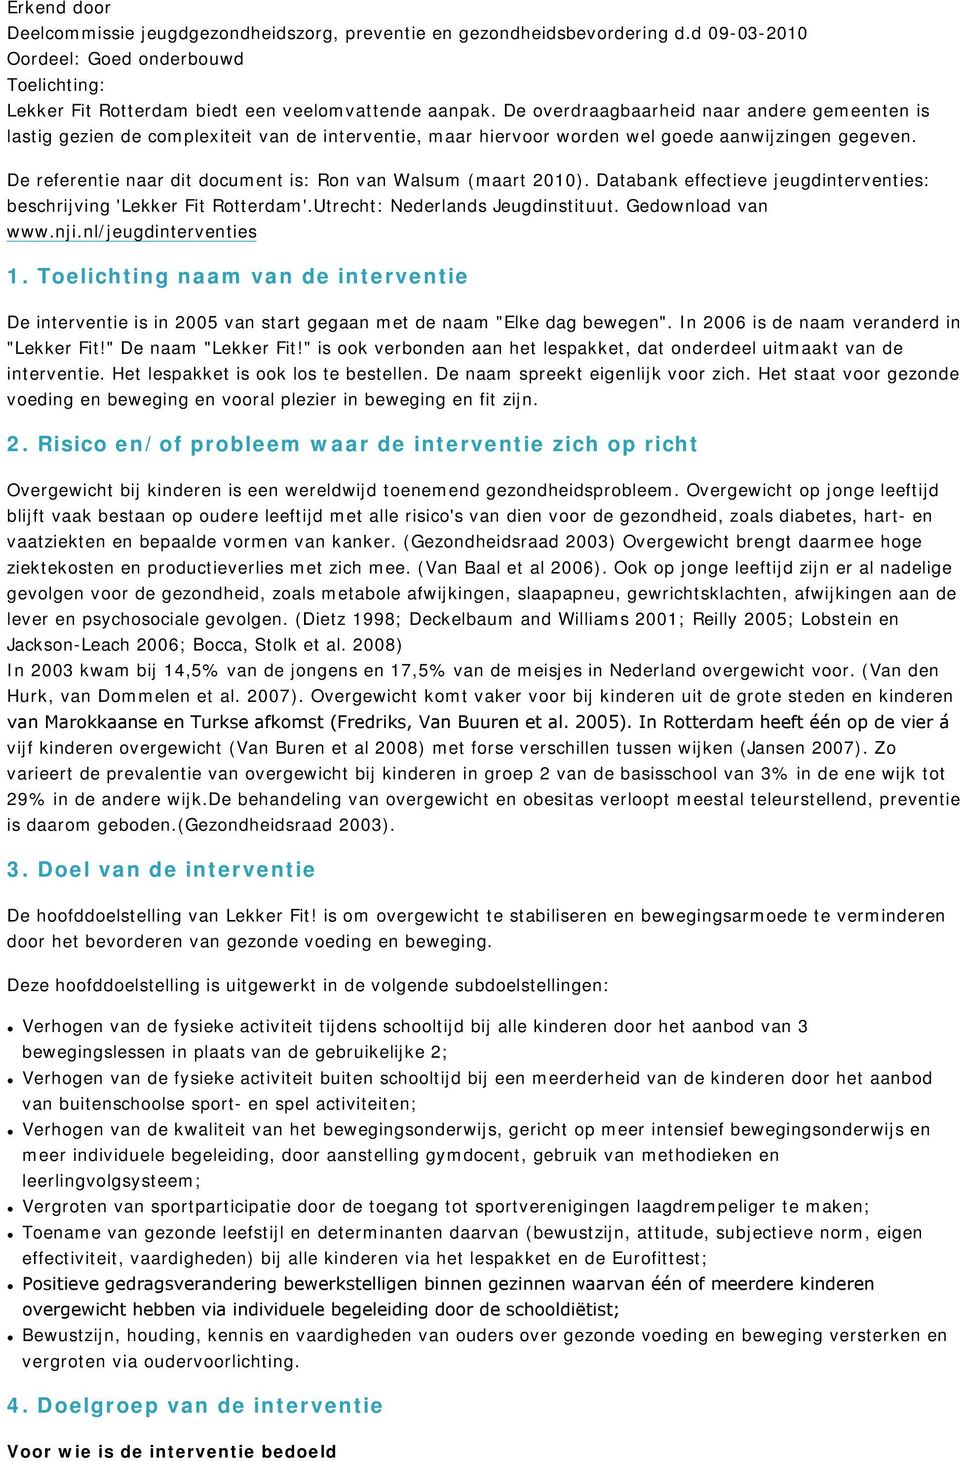 De referentie naar dit document is: Ron van Walsum (maart 2010). Databank effectieve jeugdinterventies: beschrijving 'Lekker Fit Rotterdam'.Utrecht: Nederlands Jeugdinstituut. Gedownload van www.nji.